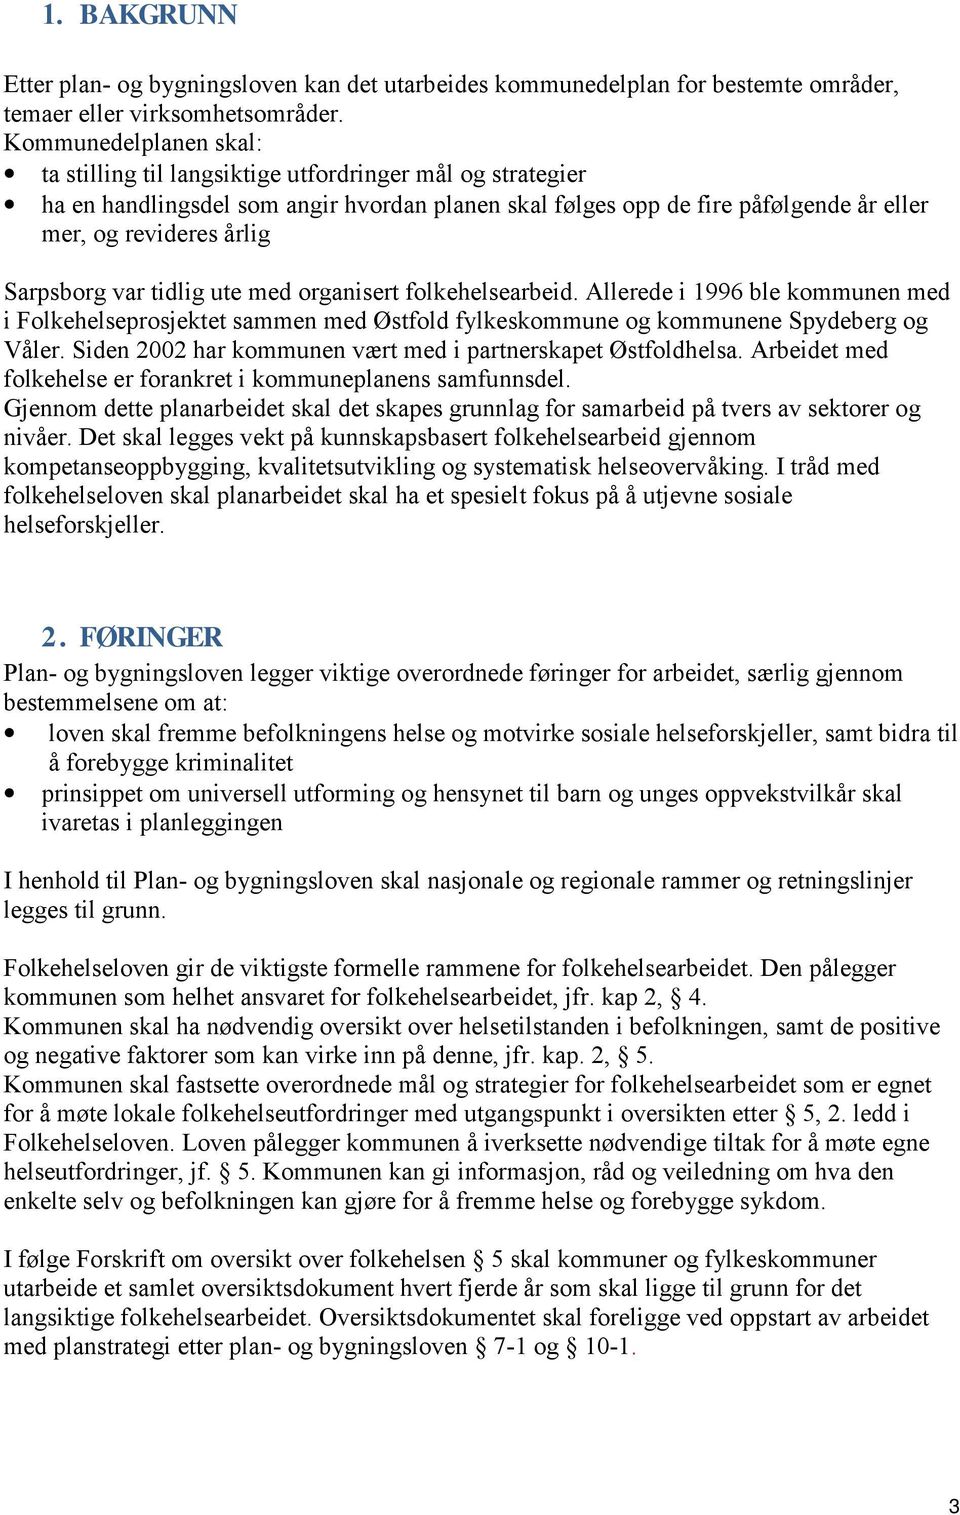 Sarpsborg var tidlig ute med organisert folkehelsearbeid. Allerede i 1996 ble kommunen med i Folkehelseprosjektet sammen med Østfold fylkeskommune og kommunene Spydeberg og Våler.